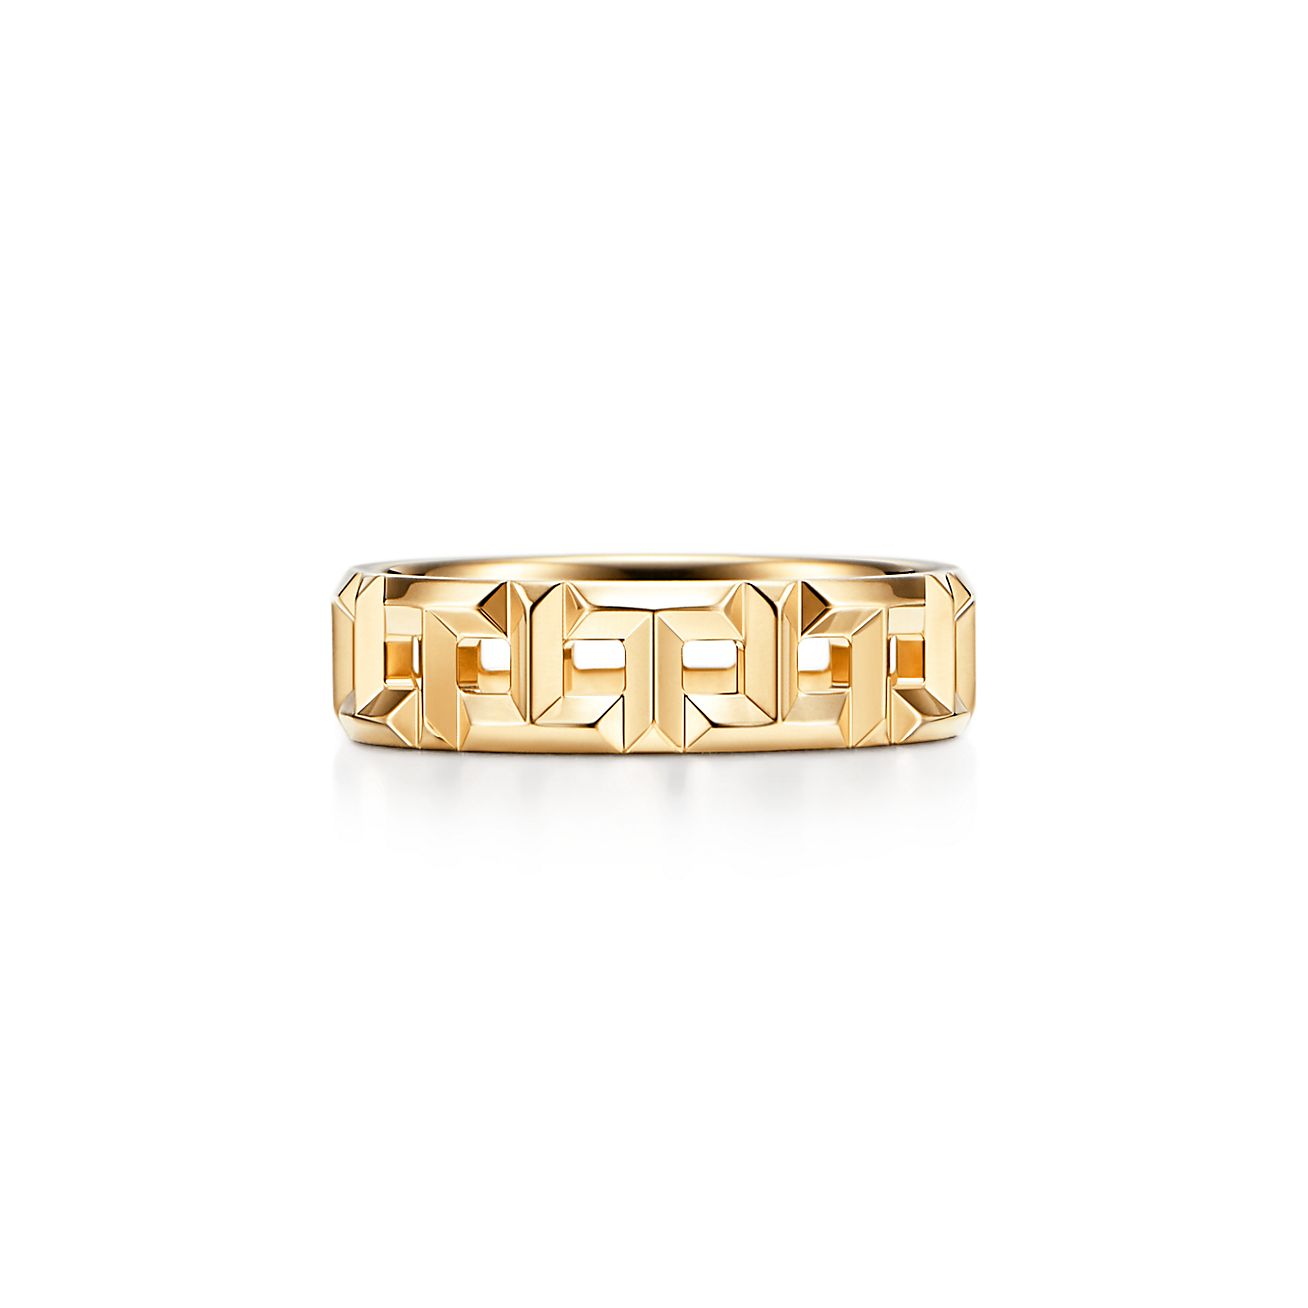 Tiffany T True wide ring in 18k gold, 5 